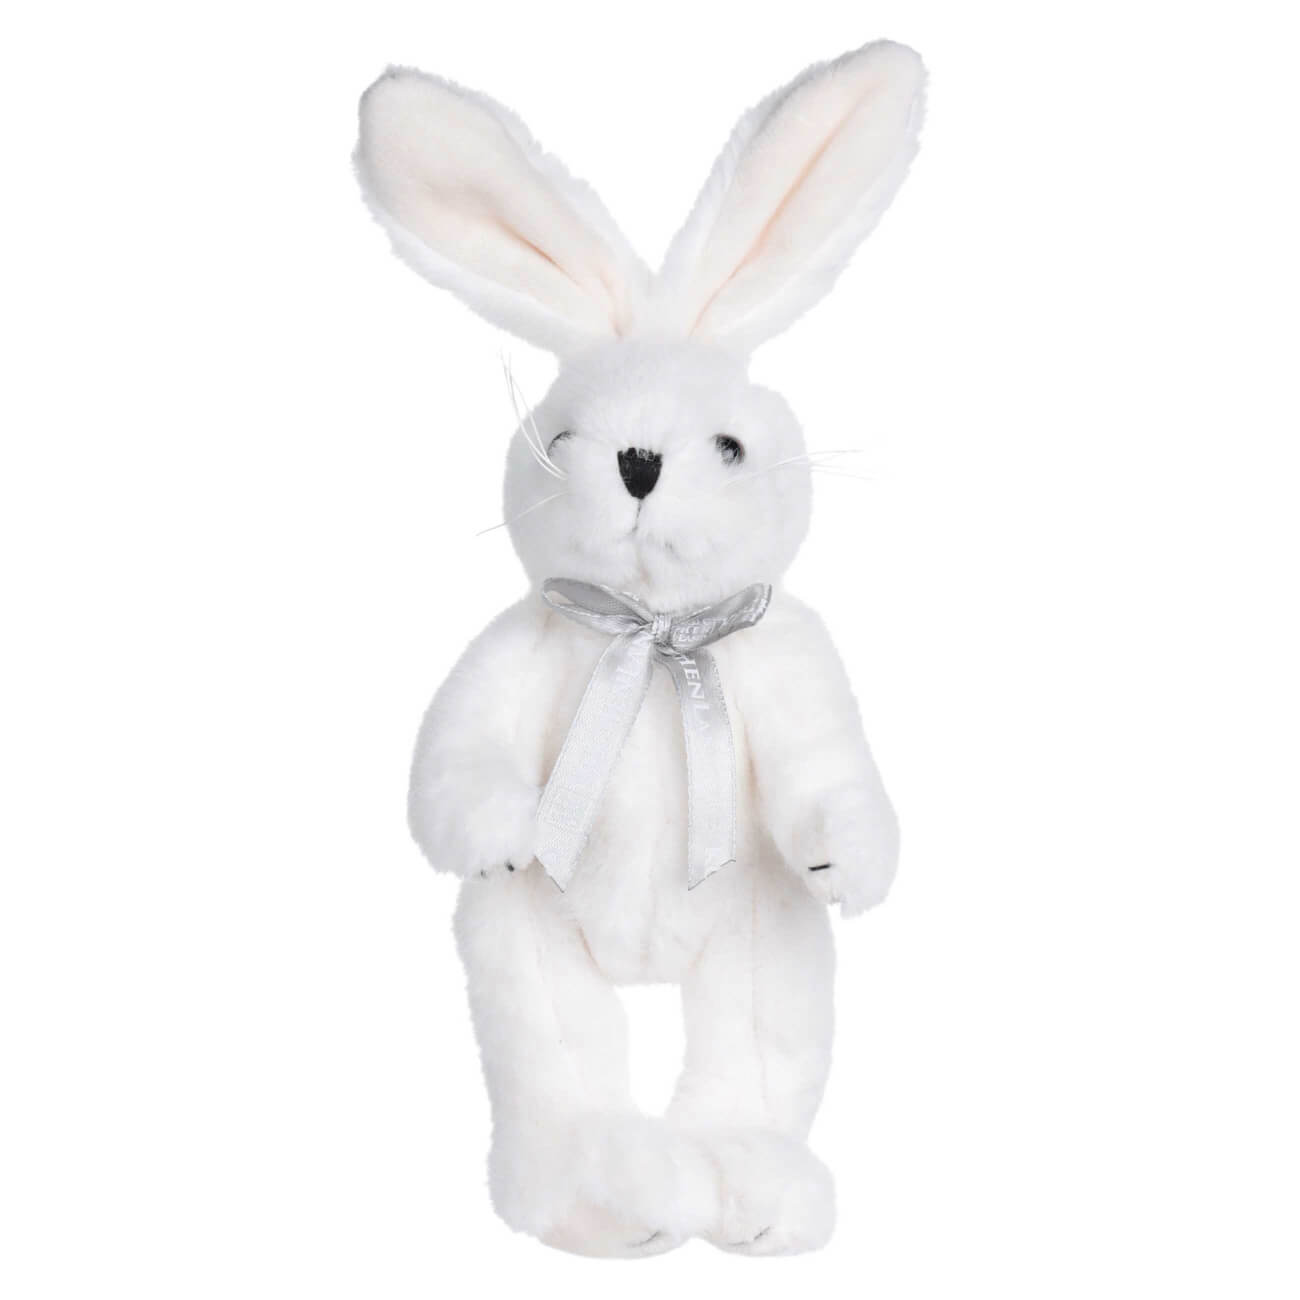 Игрушка, 20 см, мягкая, с подвижными лапами, полиэстер, белая, Кролик, Rabbit toy мягкая игрушка басик в полосатой кофте и штанах 19 см